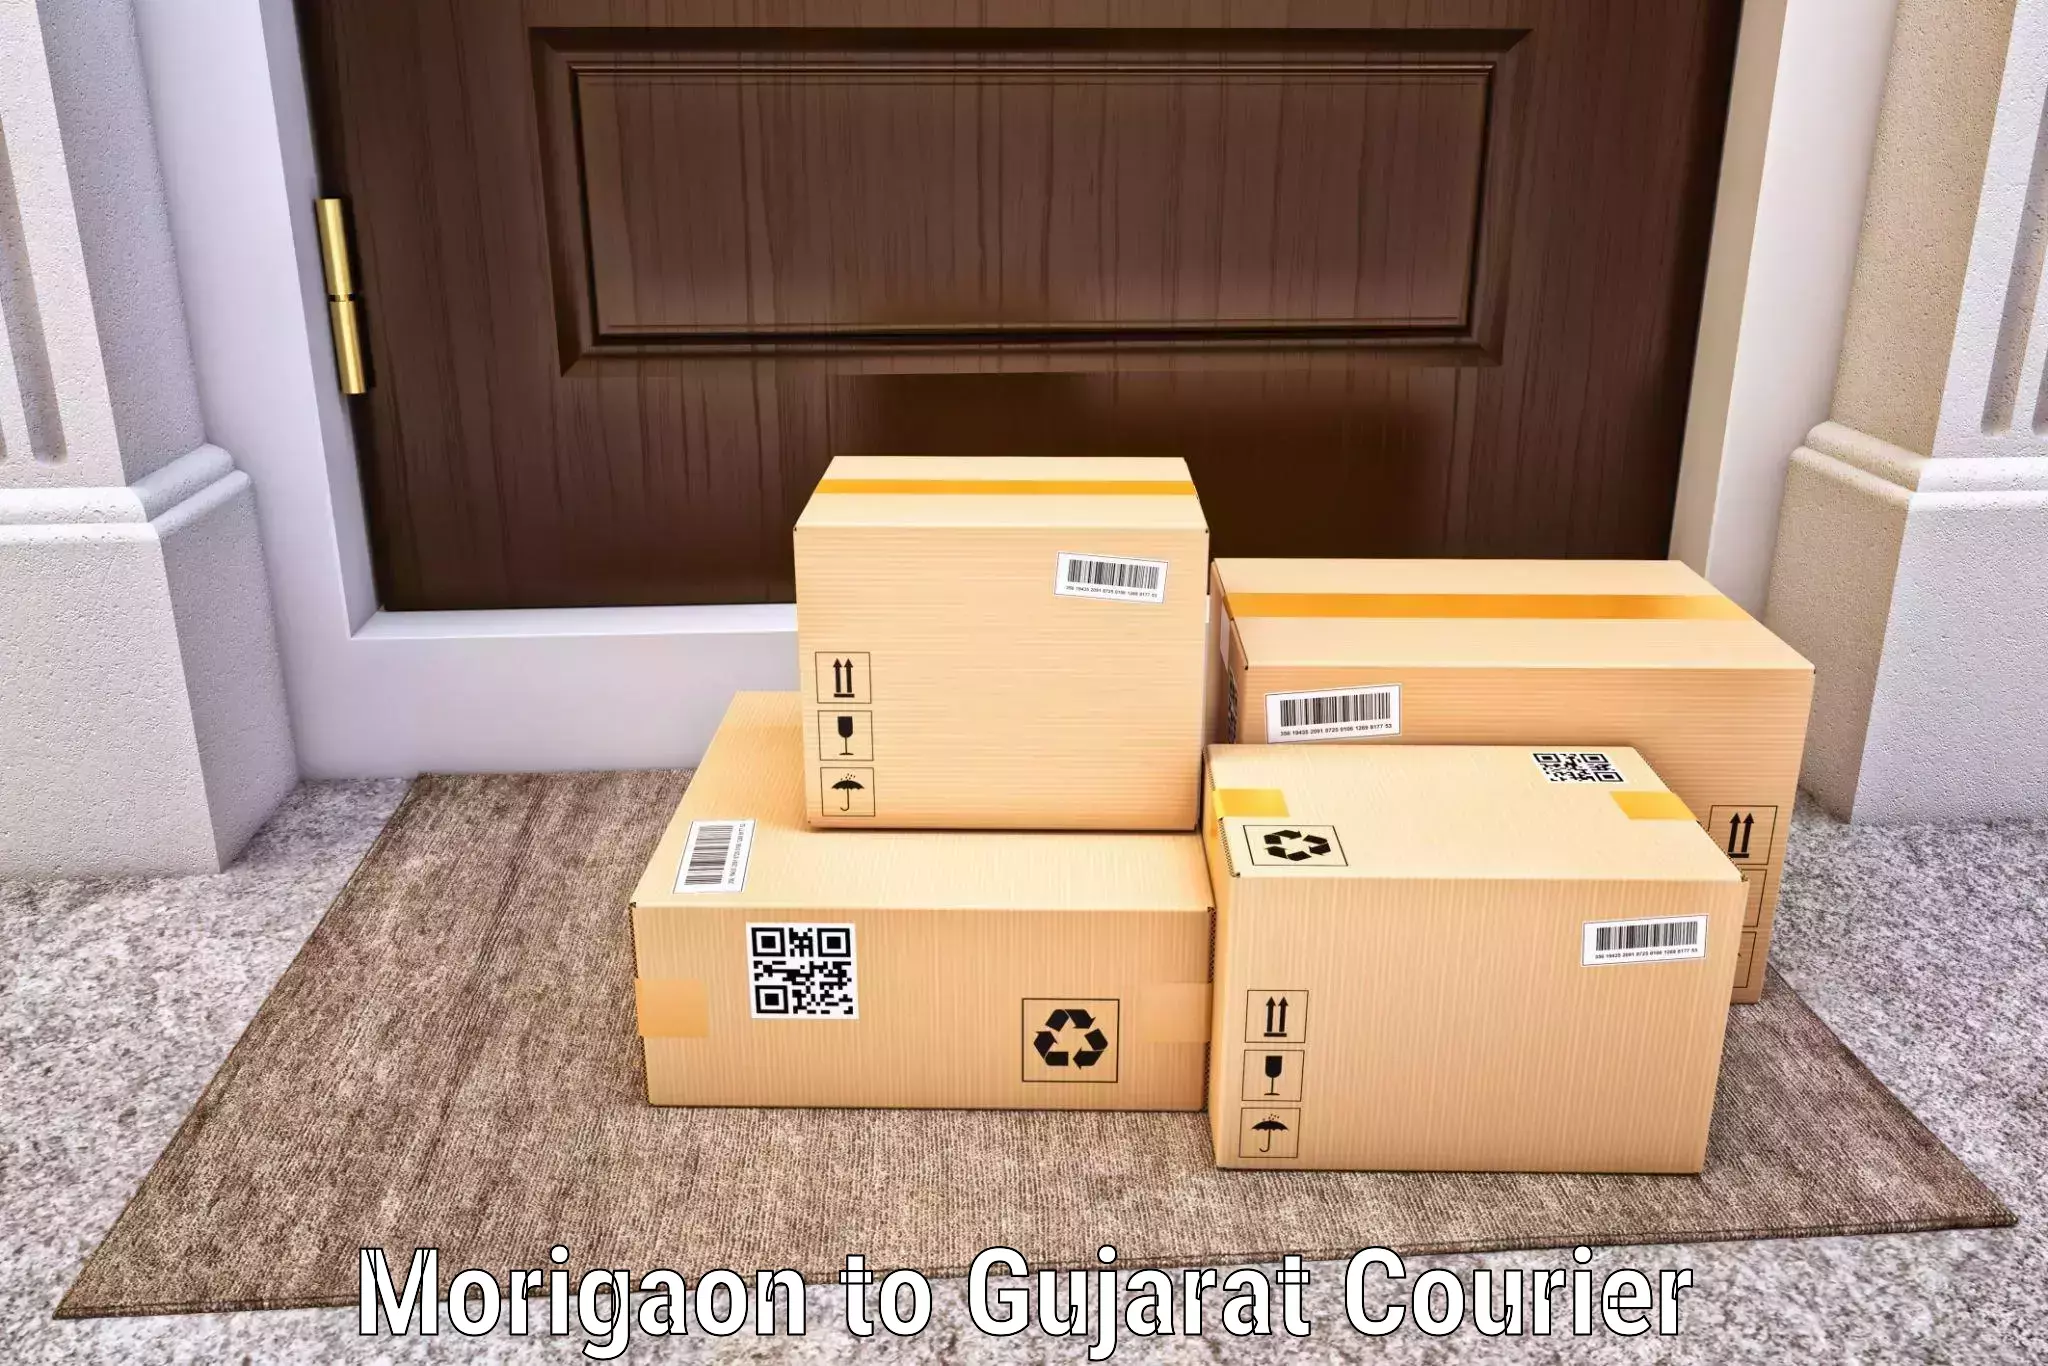 High-capacity shipping options Morigaon to Ahmedabad